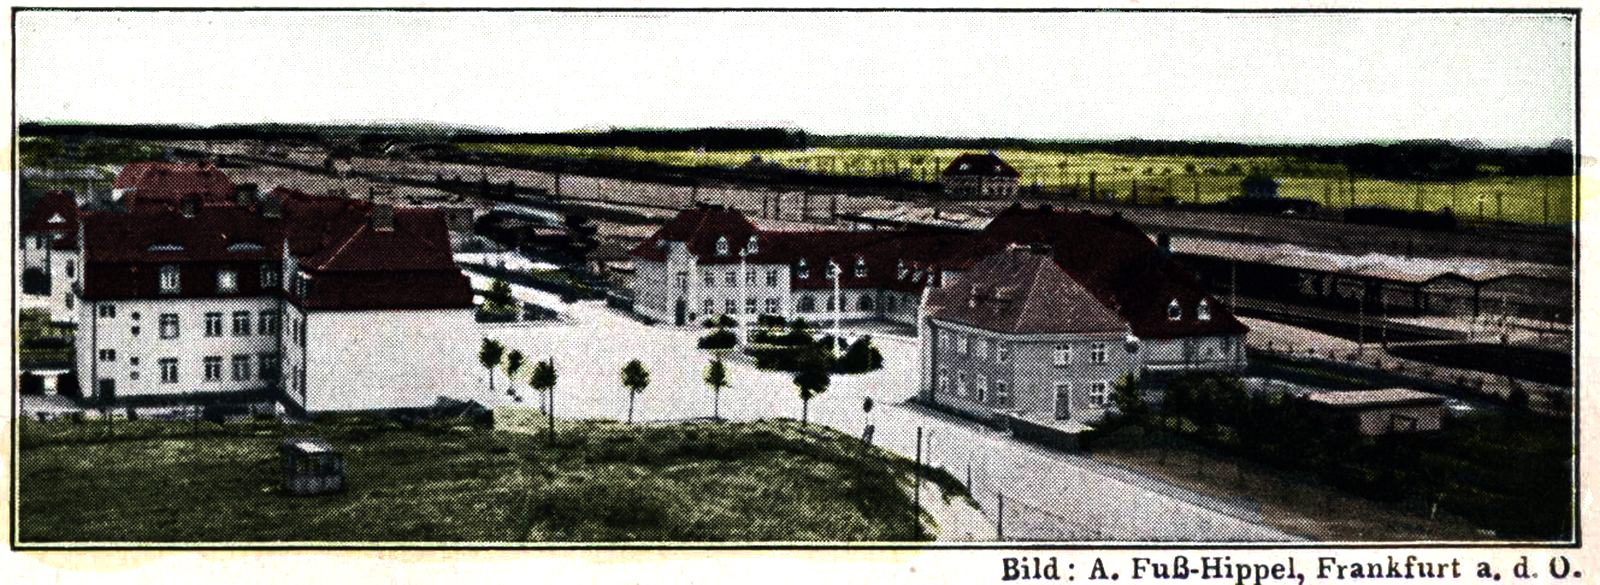 Widok dworca z 1931 roku.